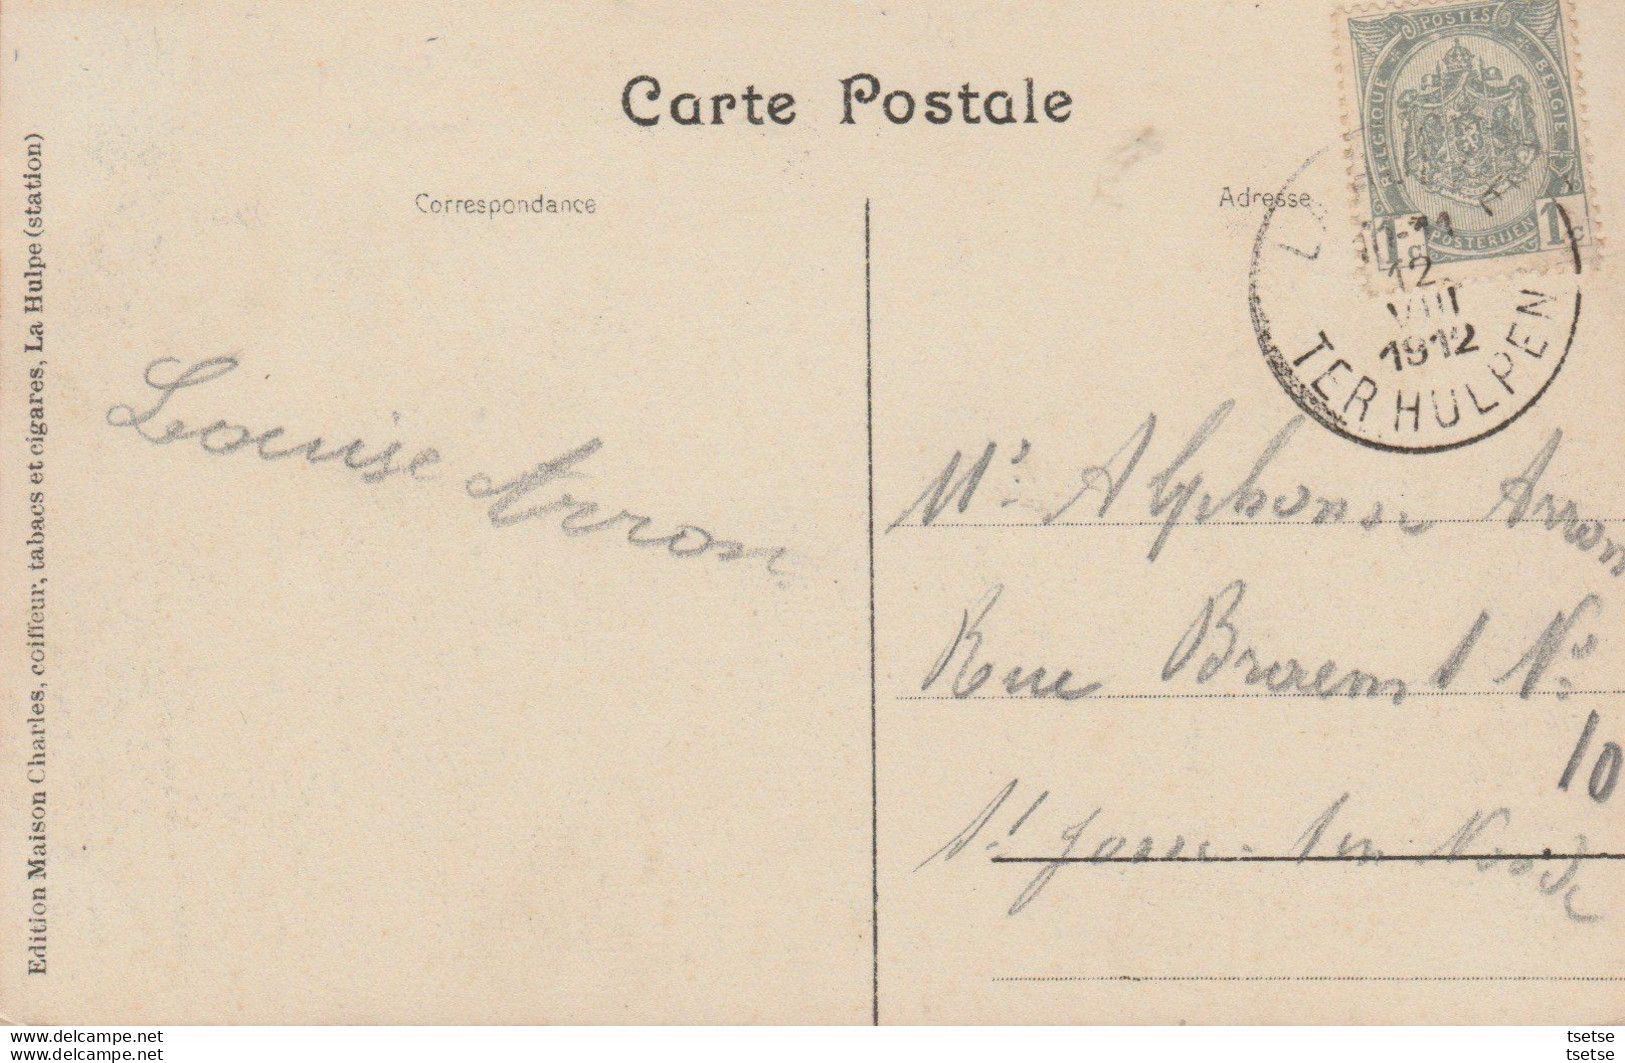 La Hulpe - Château La Roncière -1912 ( Voir Verso ) - La Hulpe